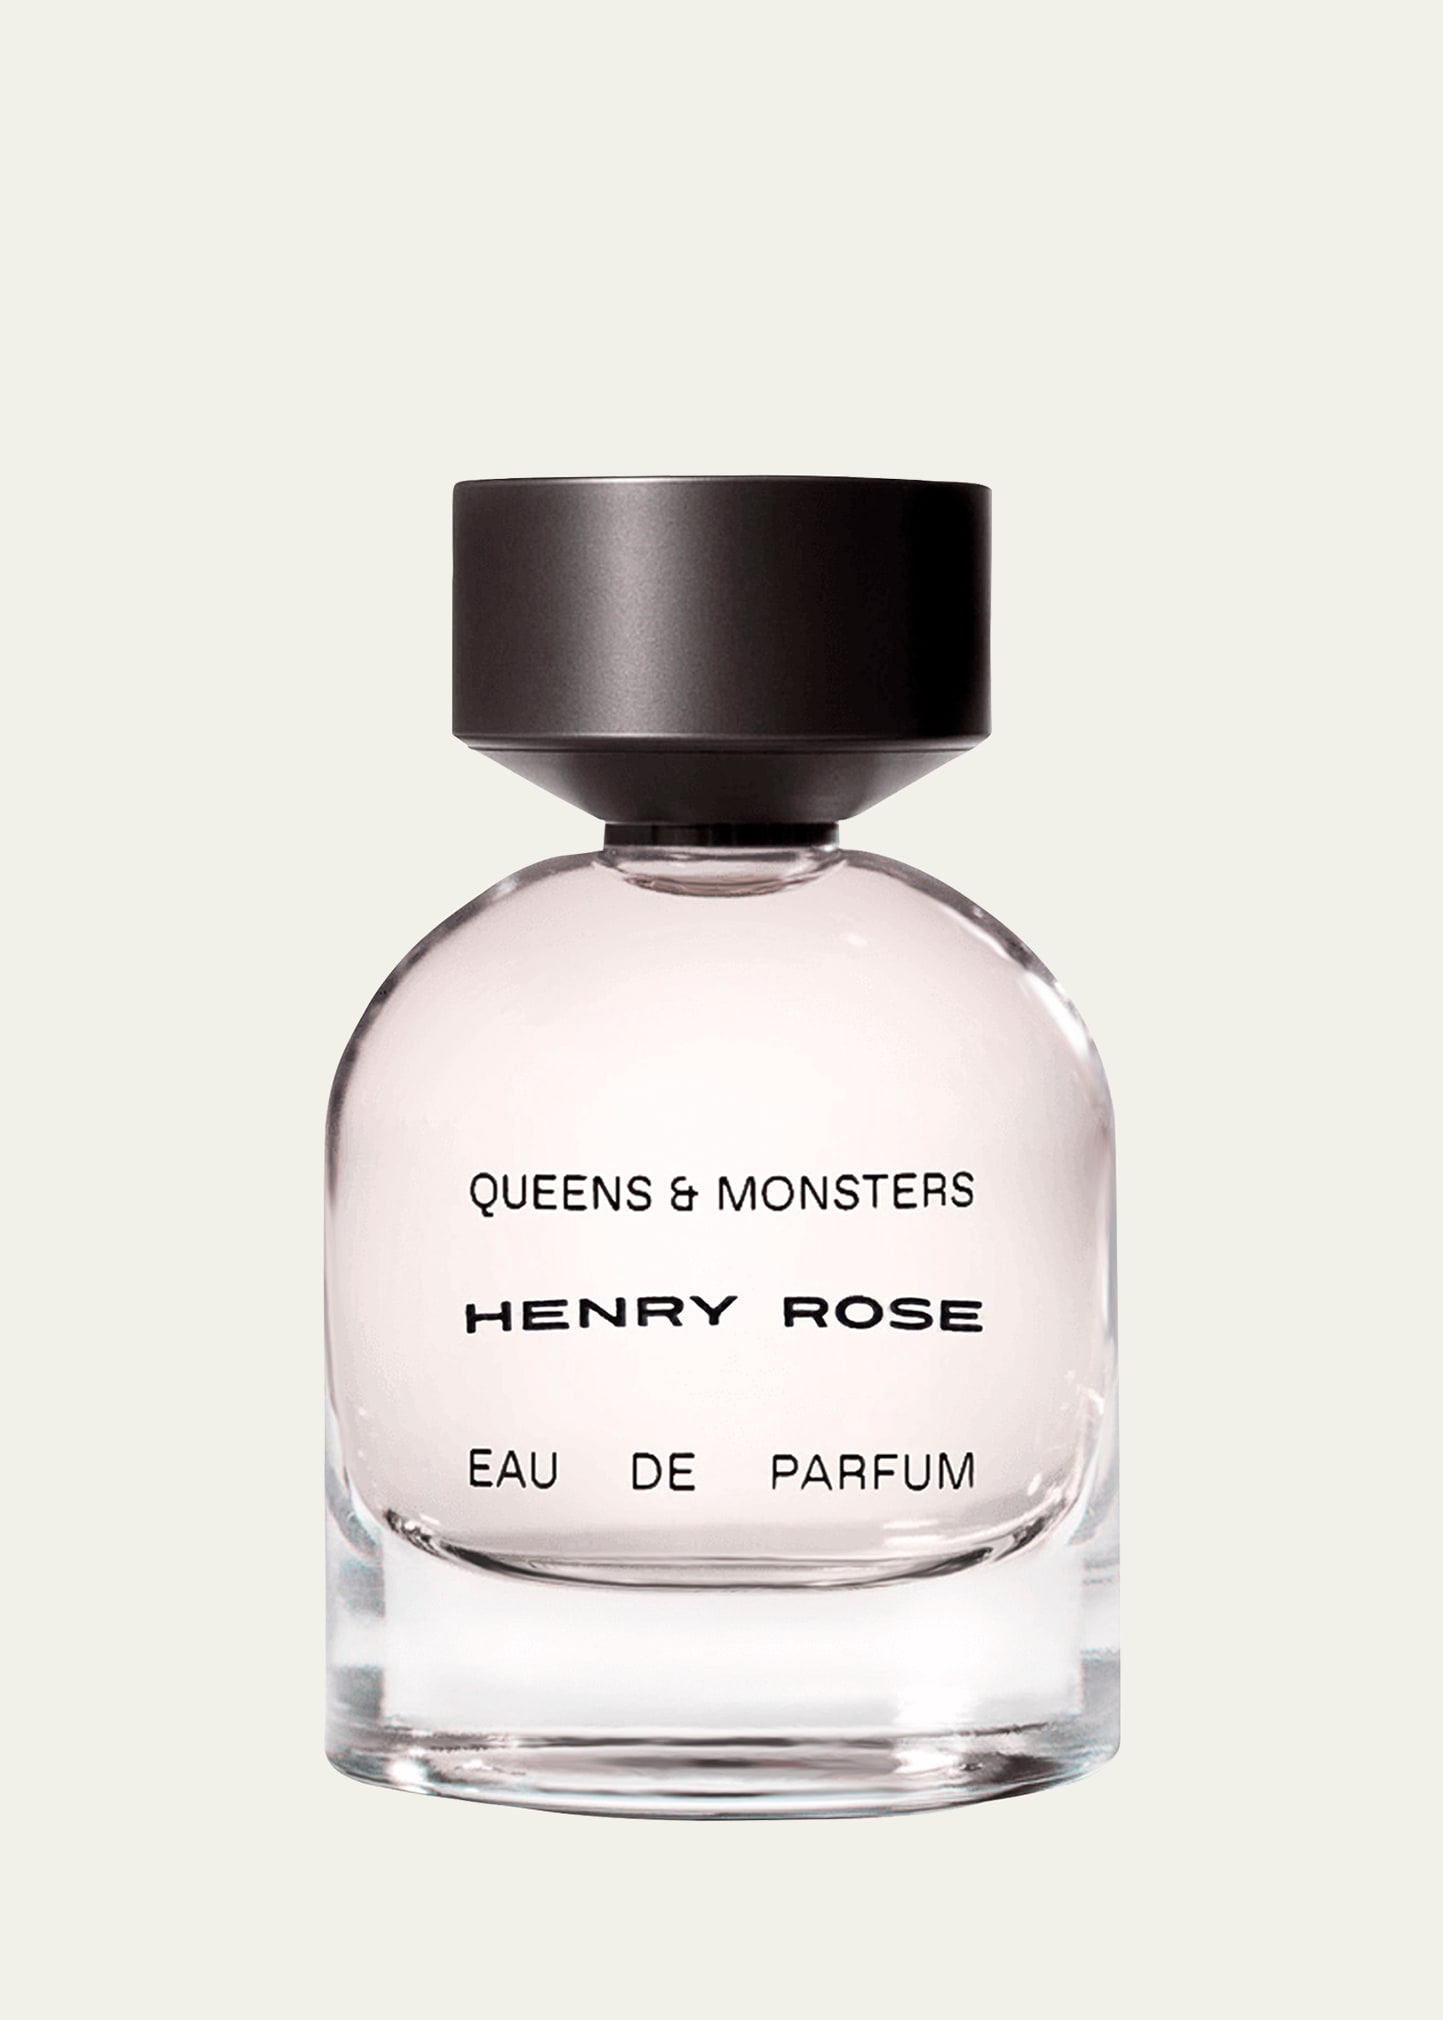 Queens and Monsters Eau de Parfum, 1.7 oz.